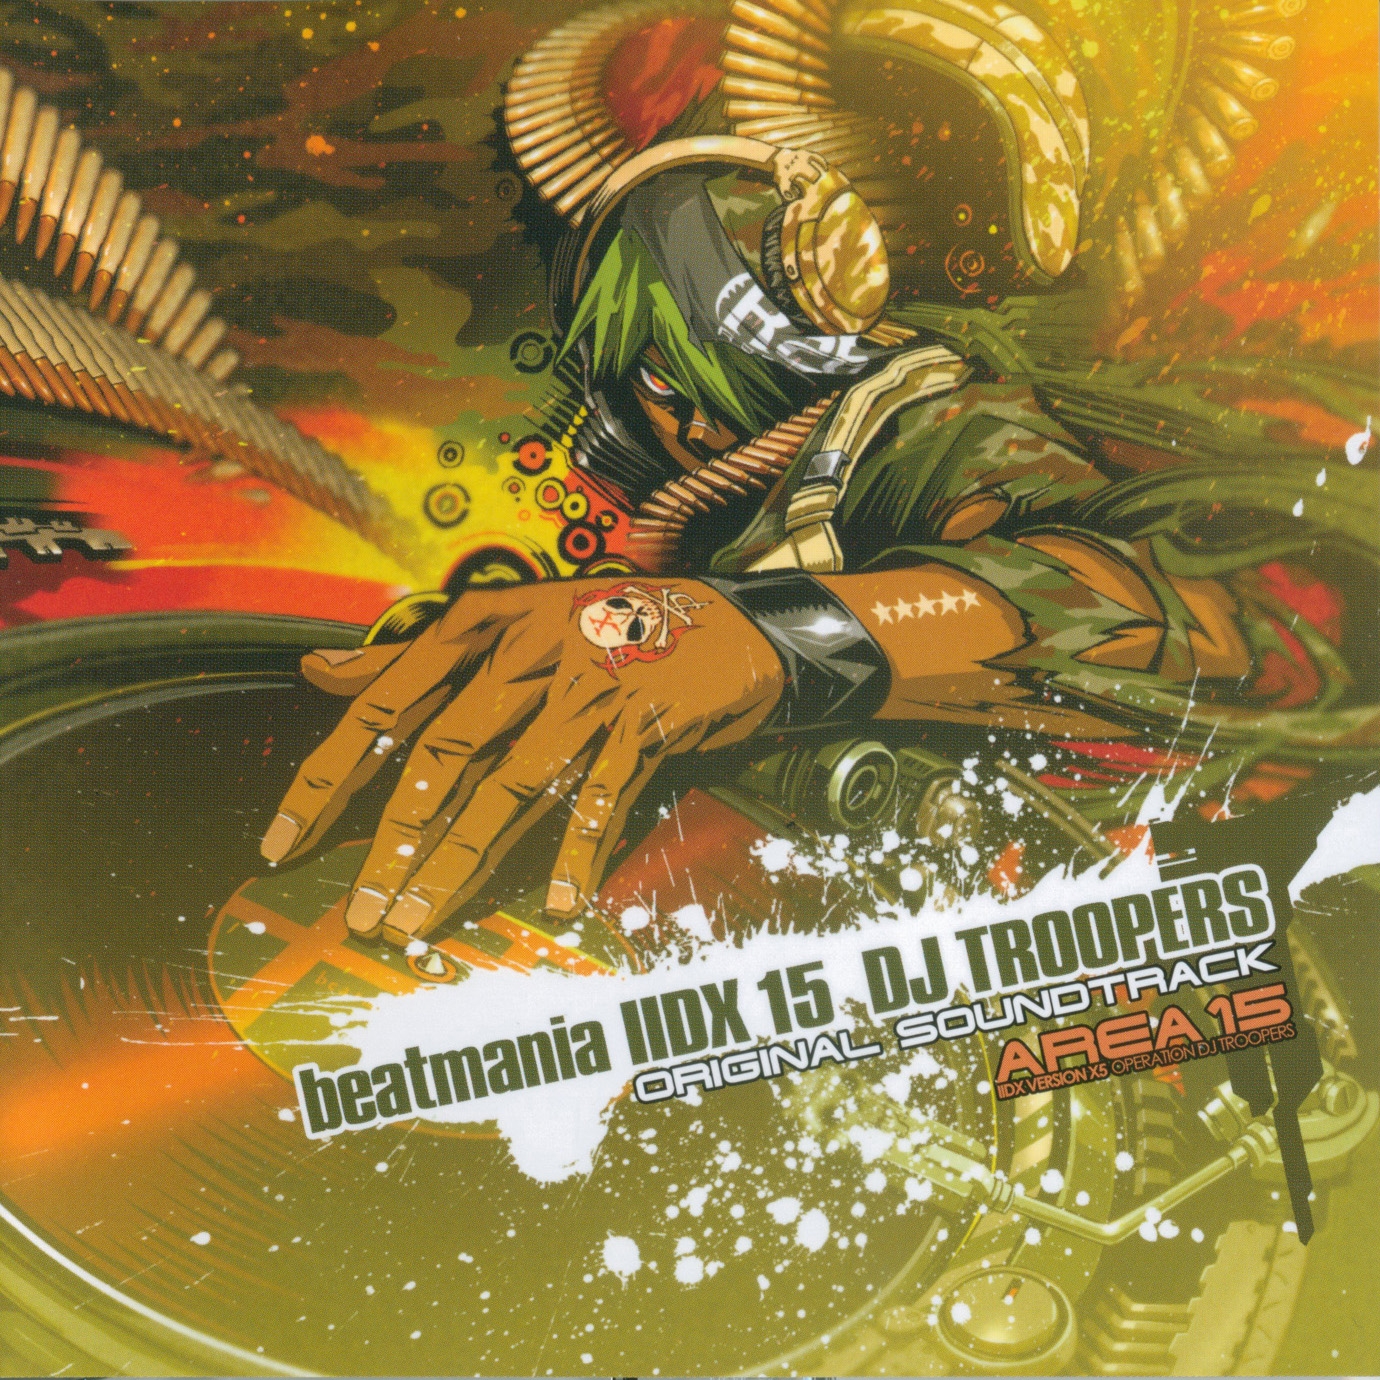 (ゲーム・ミュージック) CD beatmania DX 15 DJ TROOPERS ORIGINAL SOUNDTRACK【コナミスタイル盤】